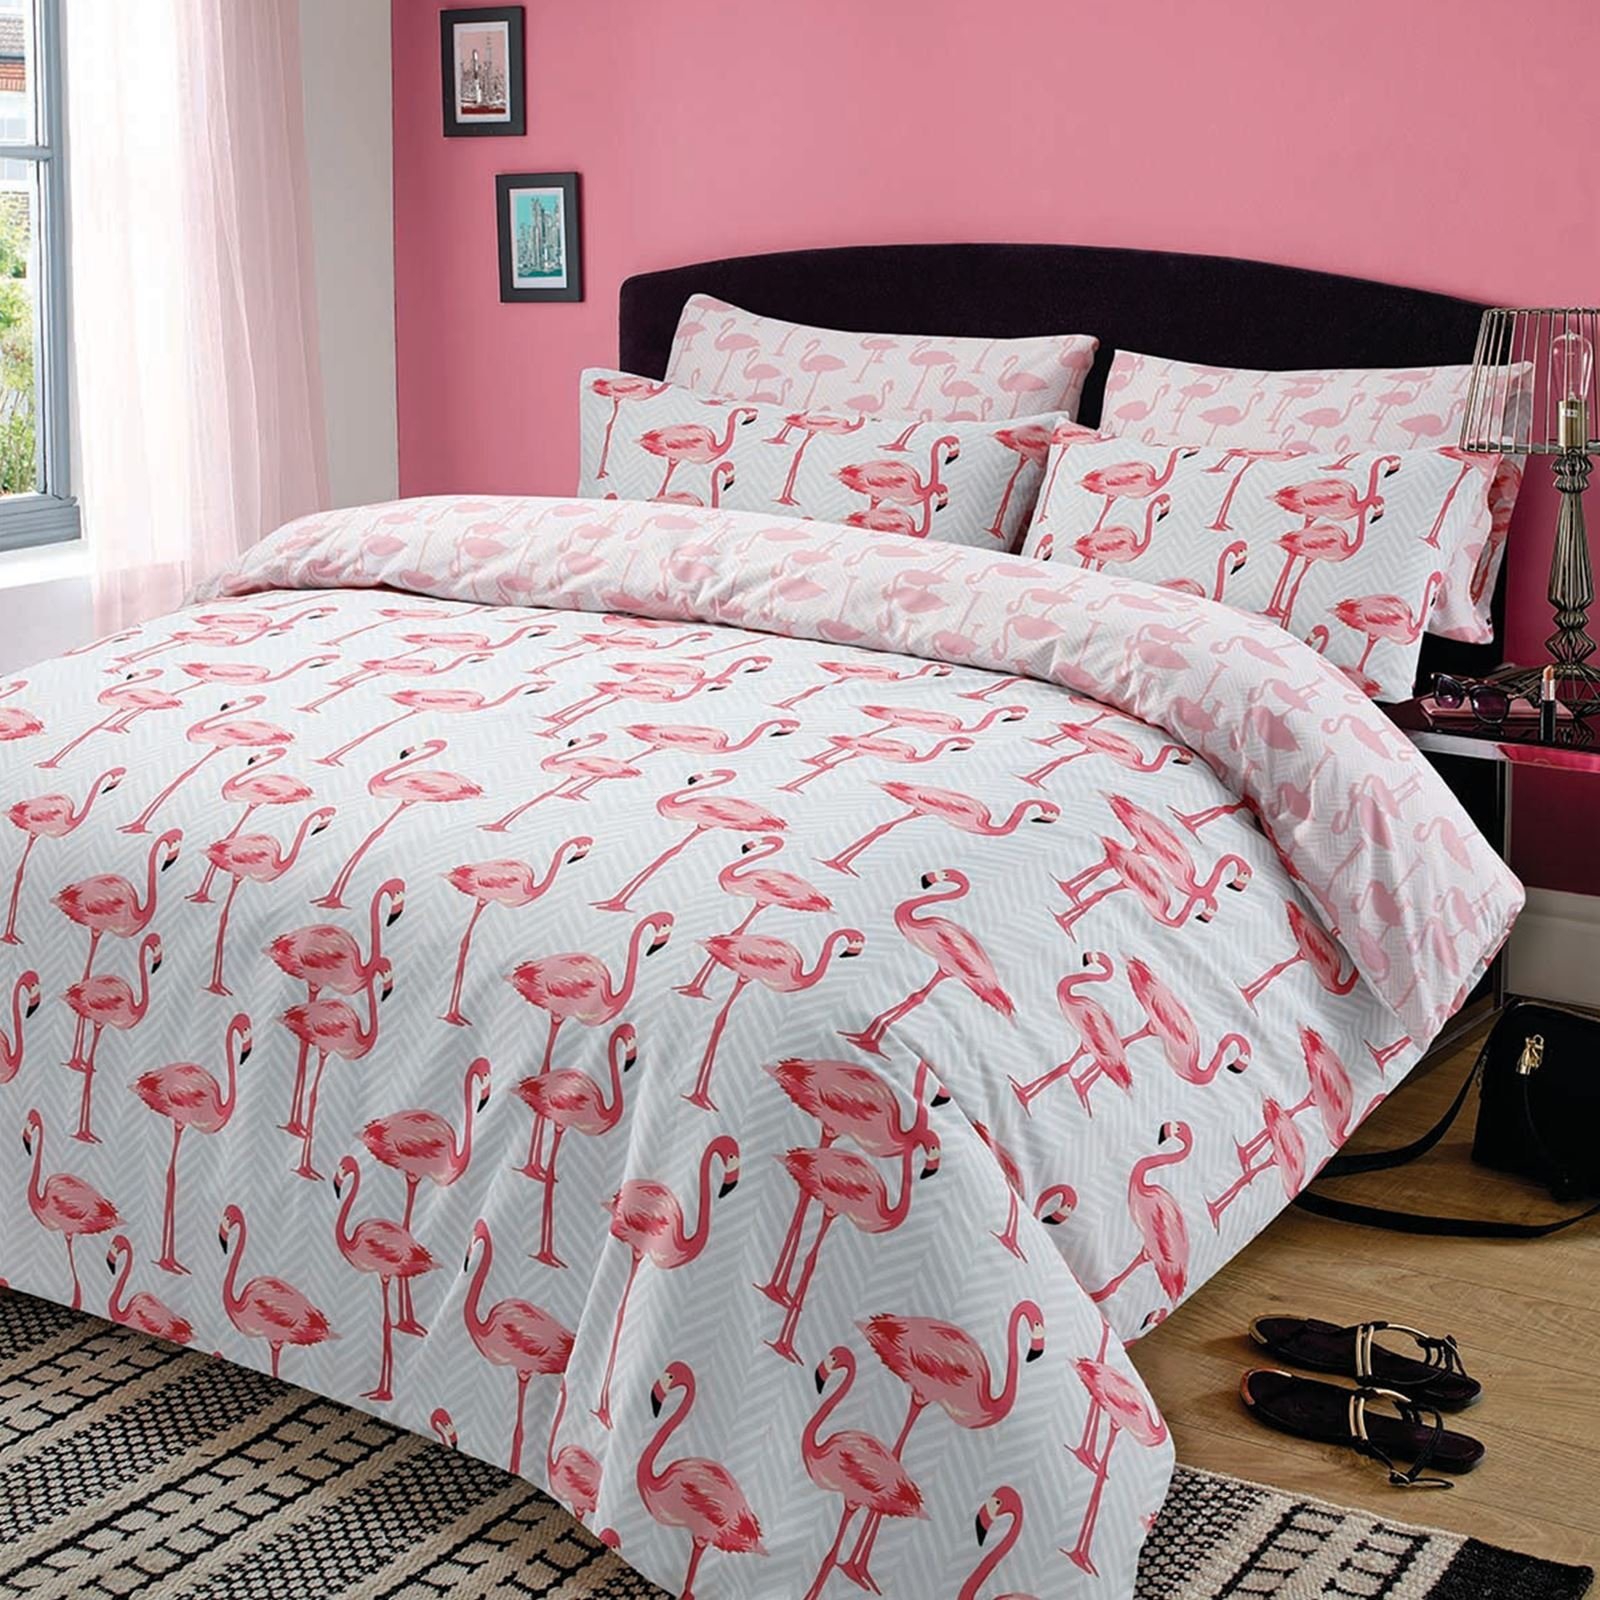 Flamingo 'Pink' Reversible Single Double King duvet quilt cover set